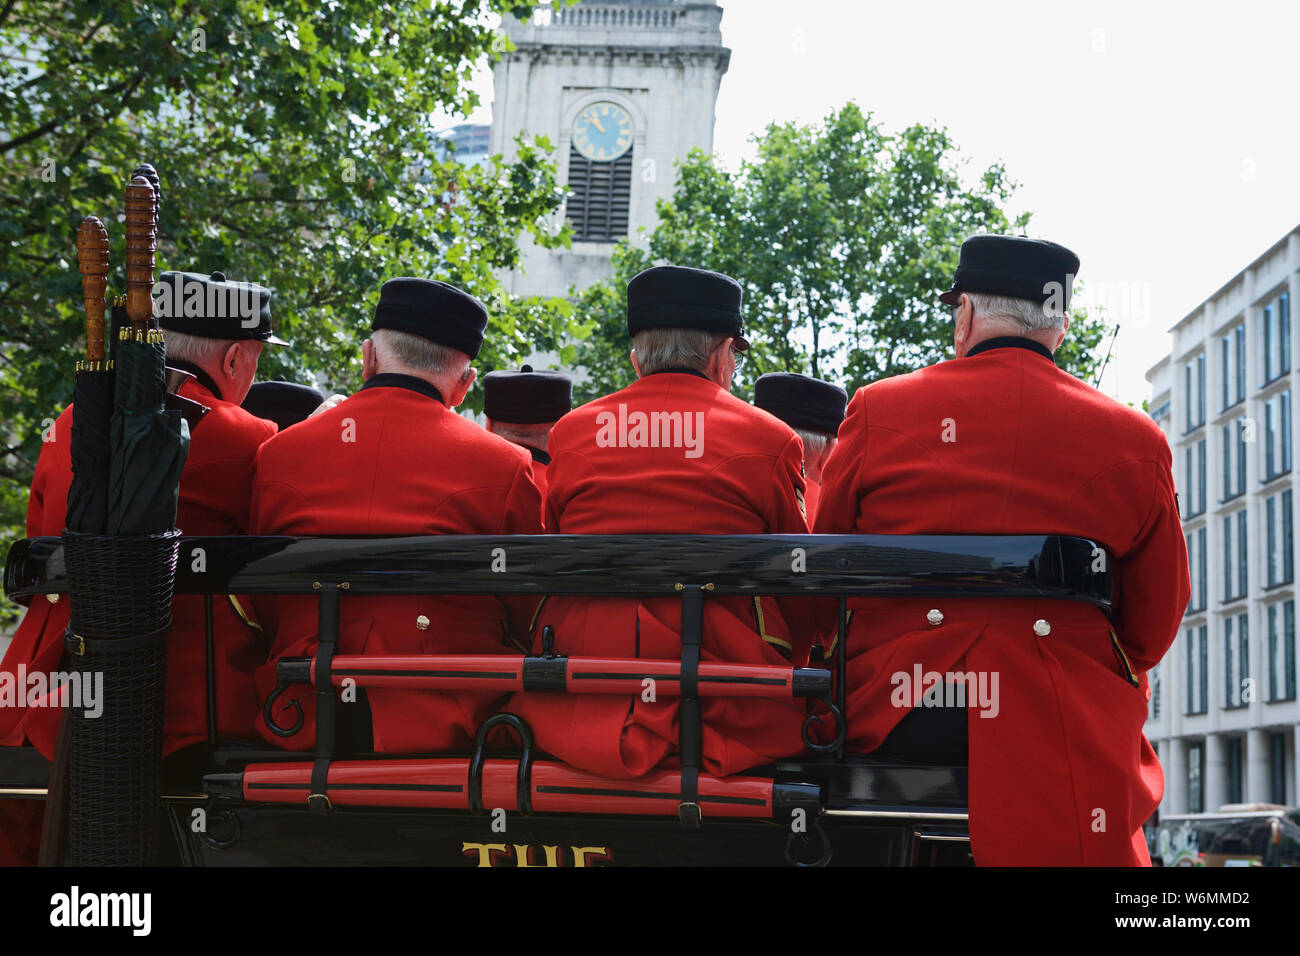 Uniforme rouge : Chelsea Pensioners, sur une calèche à ciel ouvert, City of London, Angleterre, Royaume-Uni. Banque D'Images